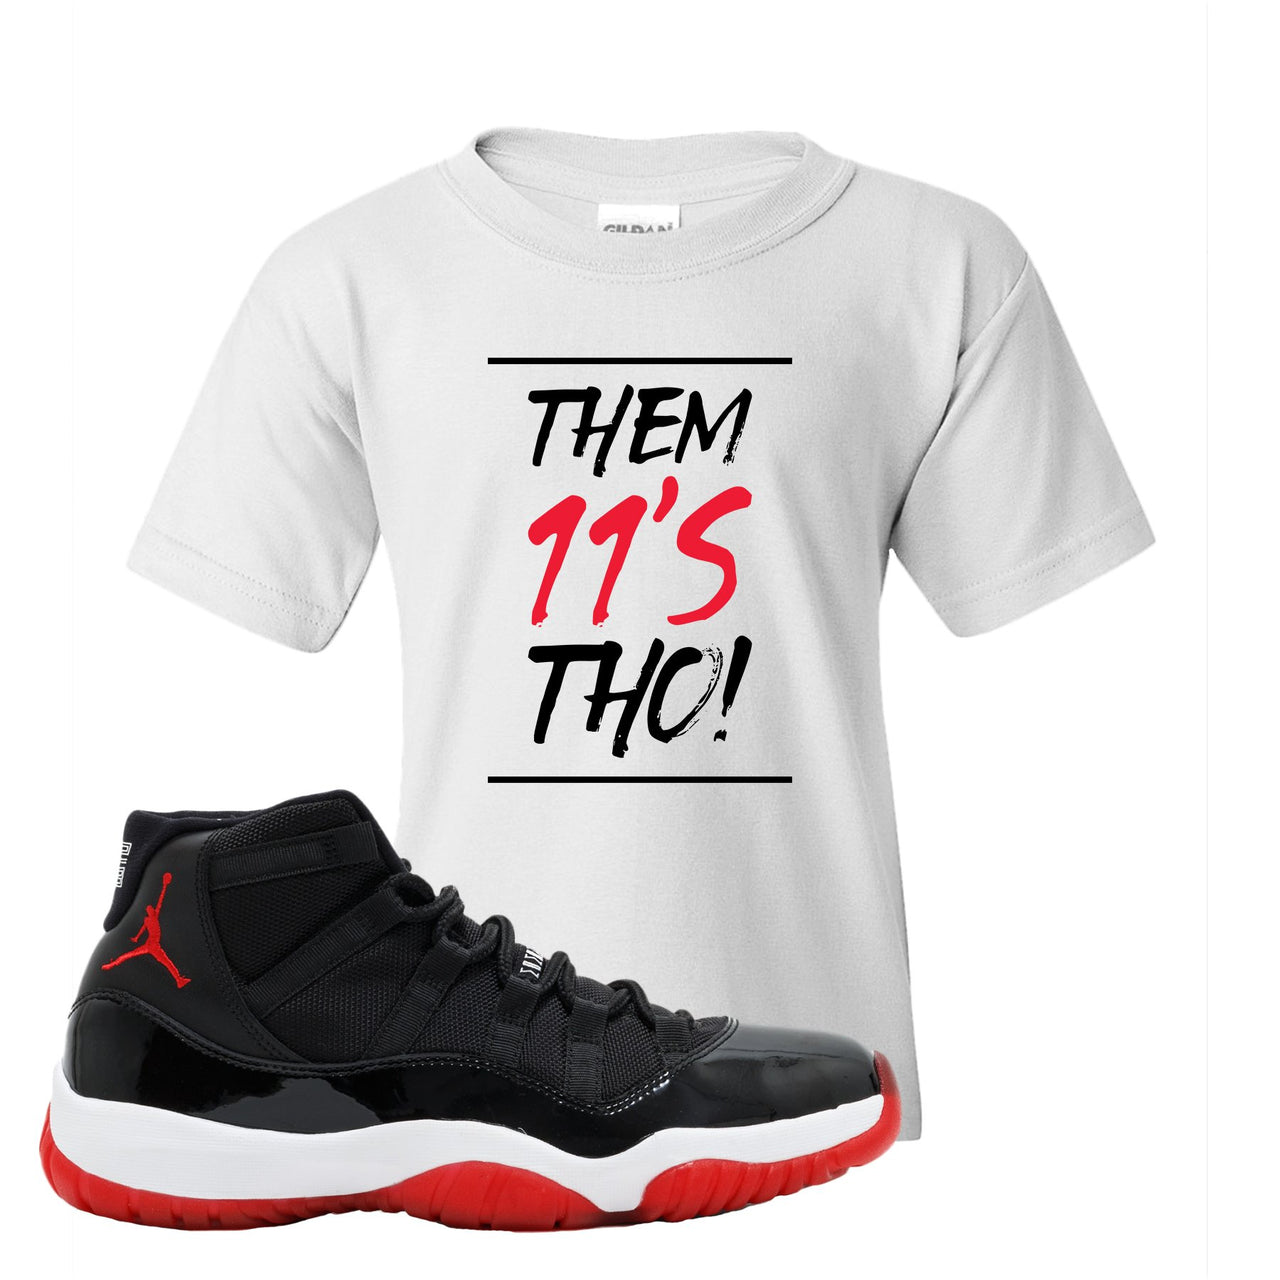 Jordan 11 Bred Them 11s Tho! White Sneaker Hook Up Kid's T-Shirt